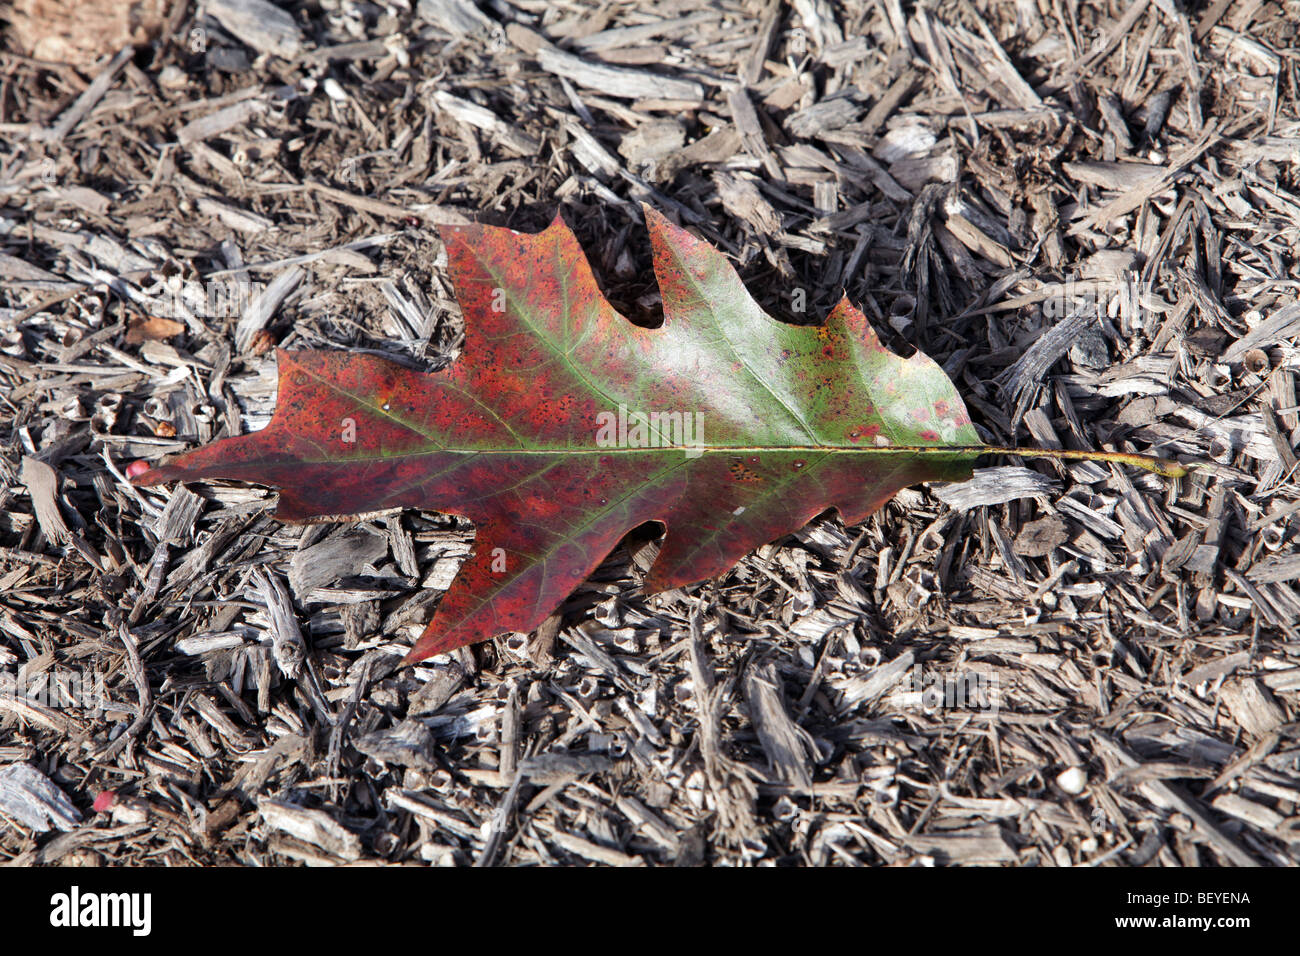 Ein einzelnes Roteiche Blatt im Herbst Farbe Farbe auf einem Bett von Mulch Quercus Rubra Fagaceae. Wandelnden Blätter des Herbstes. Stockfoto